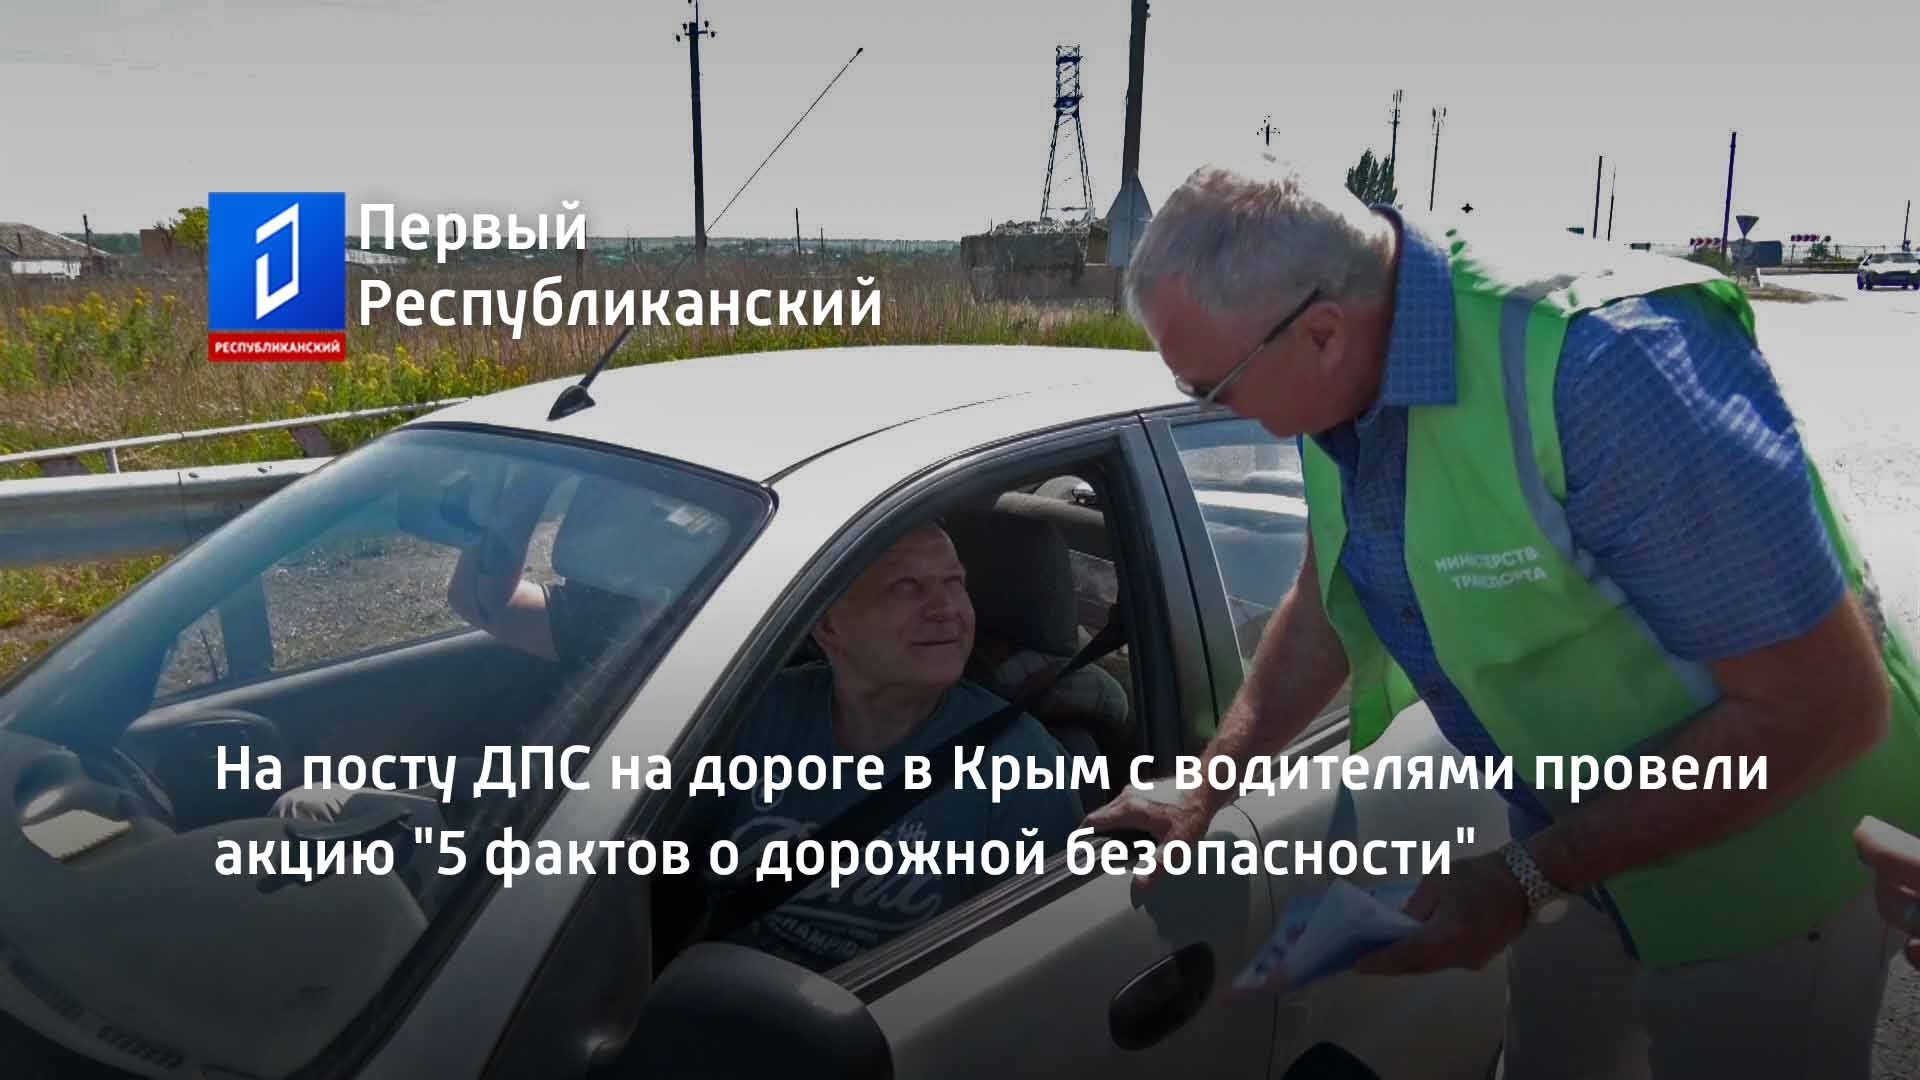 На посту ДПС на дороге в Крым с водителями провели акцию "5 фактов о дорожной безопасности"